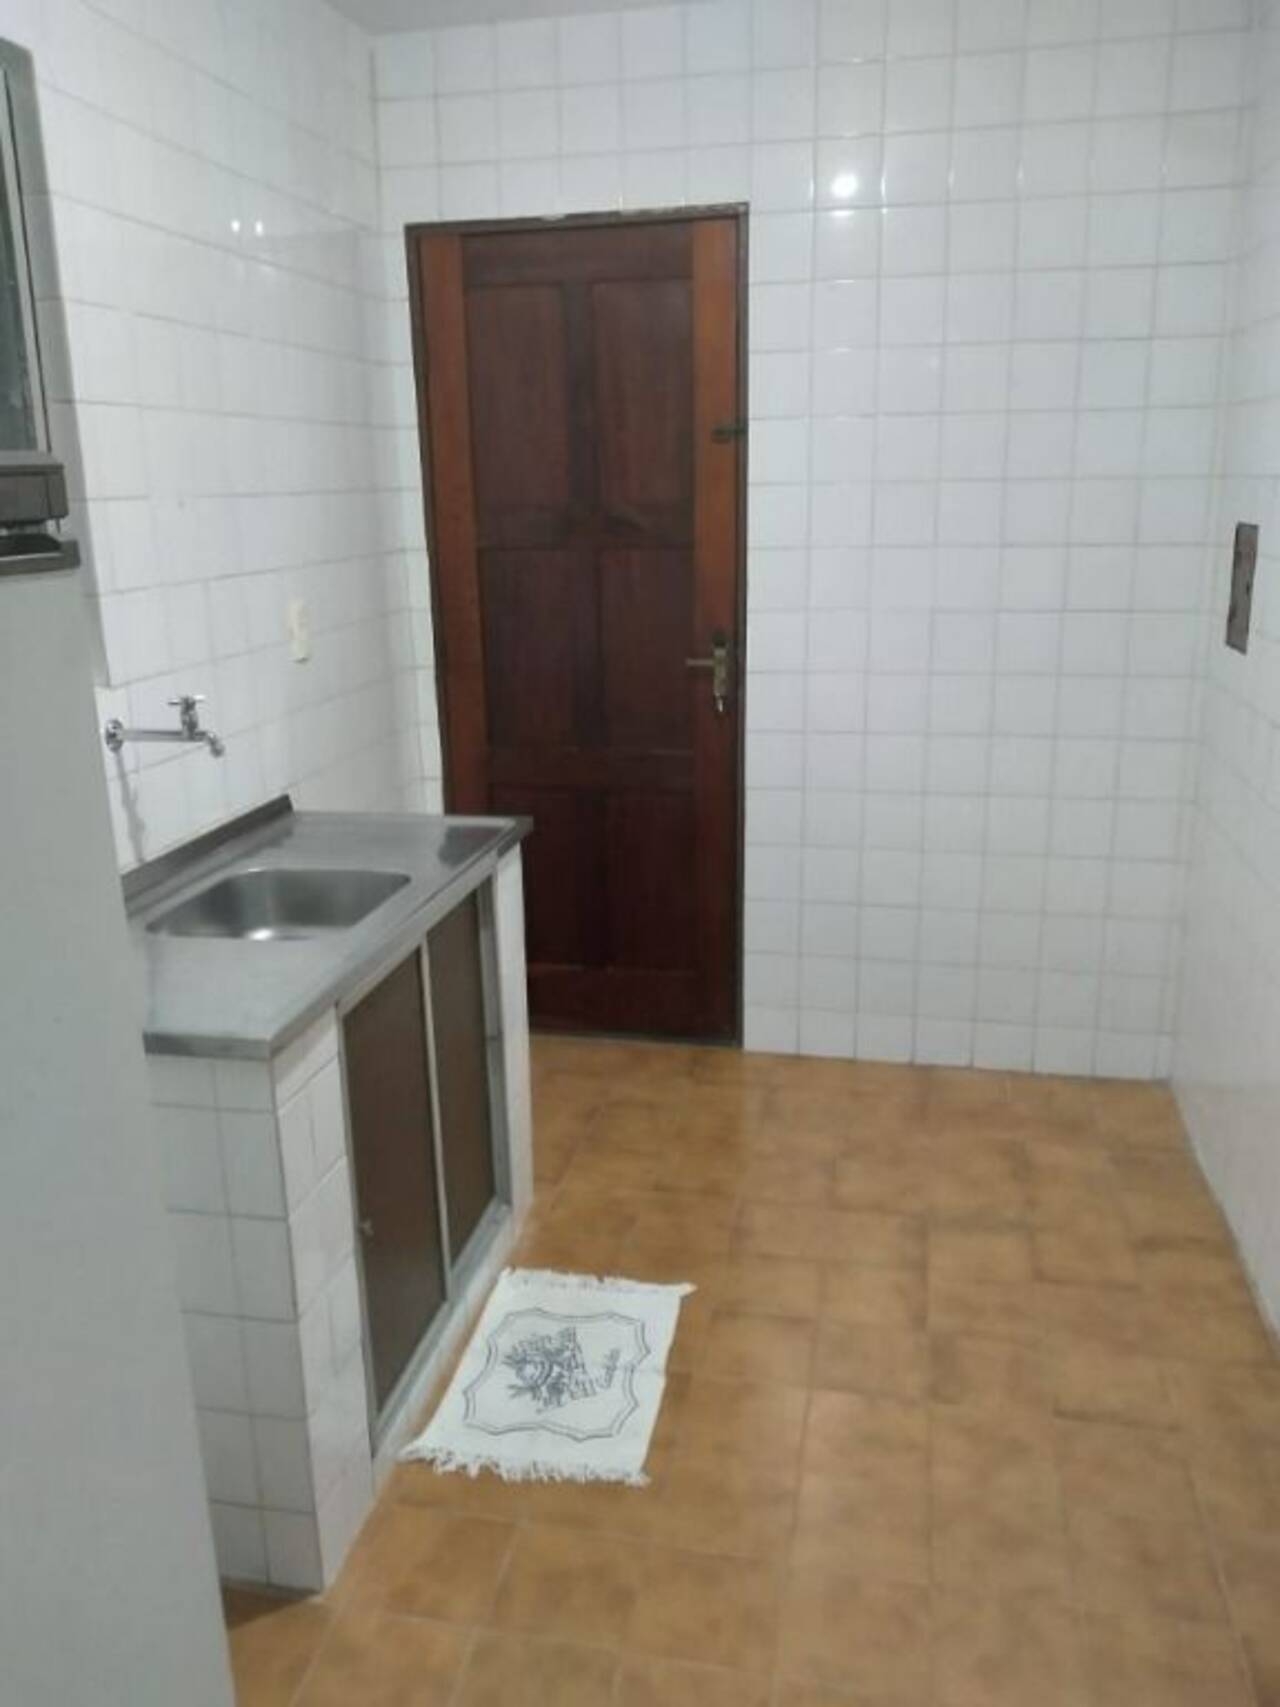 Apartamento Bairro dos Ipês, João Pessoa - PB